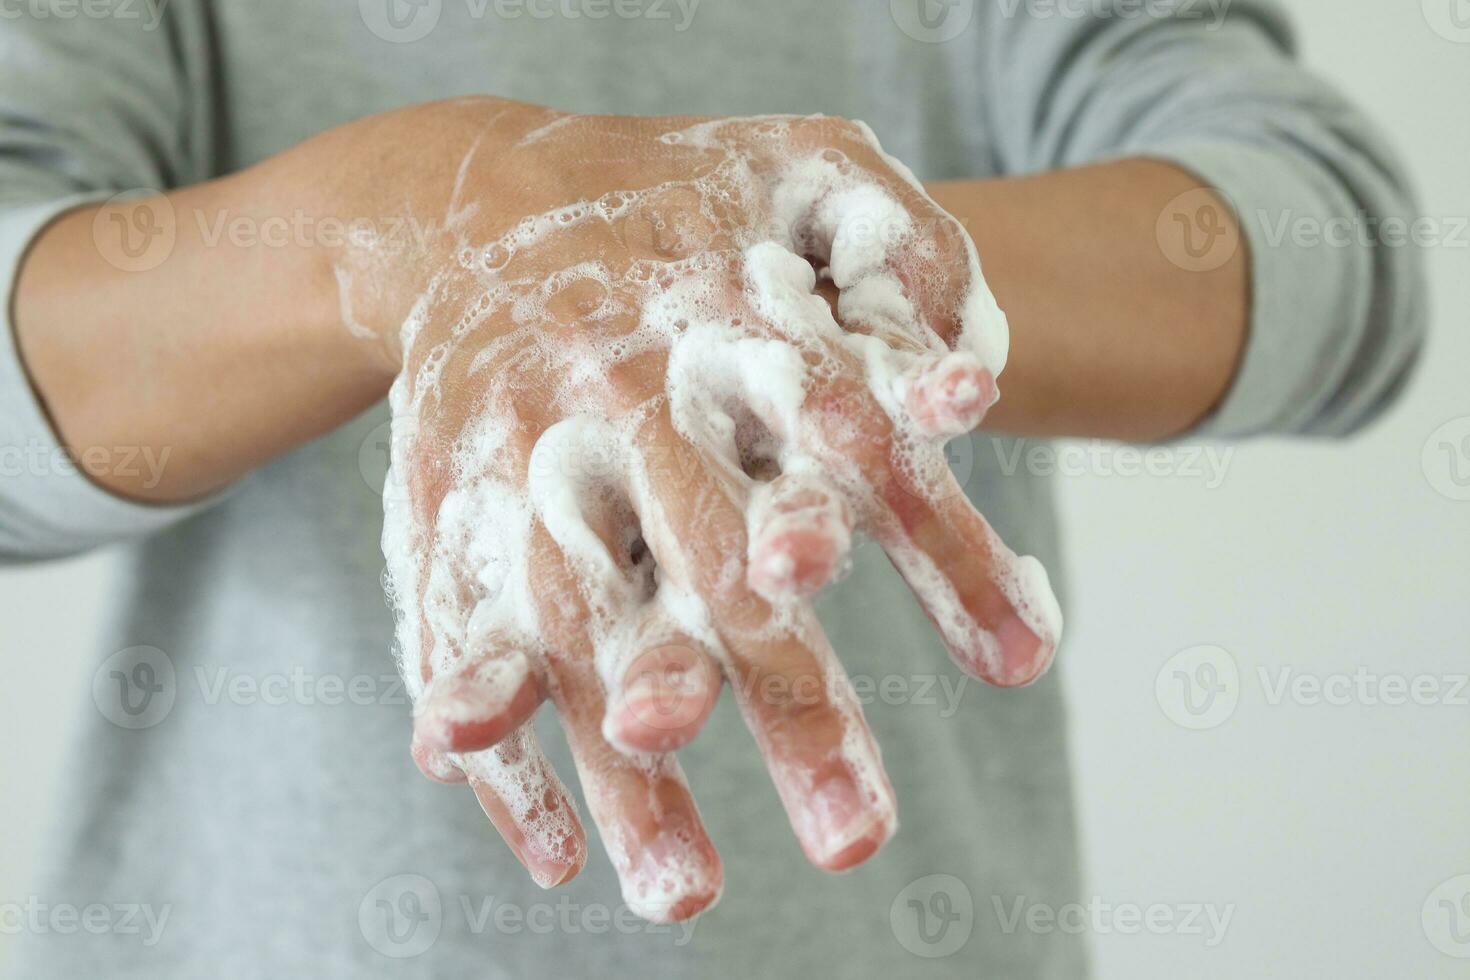 man tvätta händer med tvål för covid-19 korona virus förebyggande begrepp foto